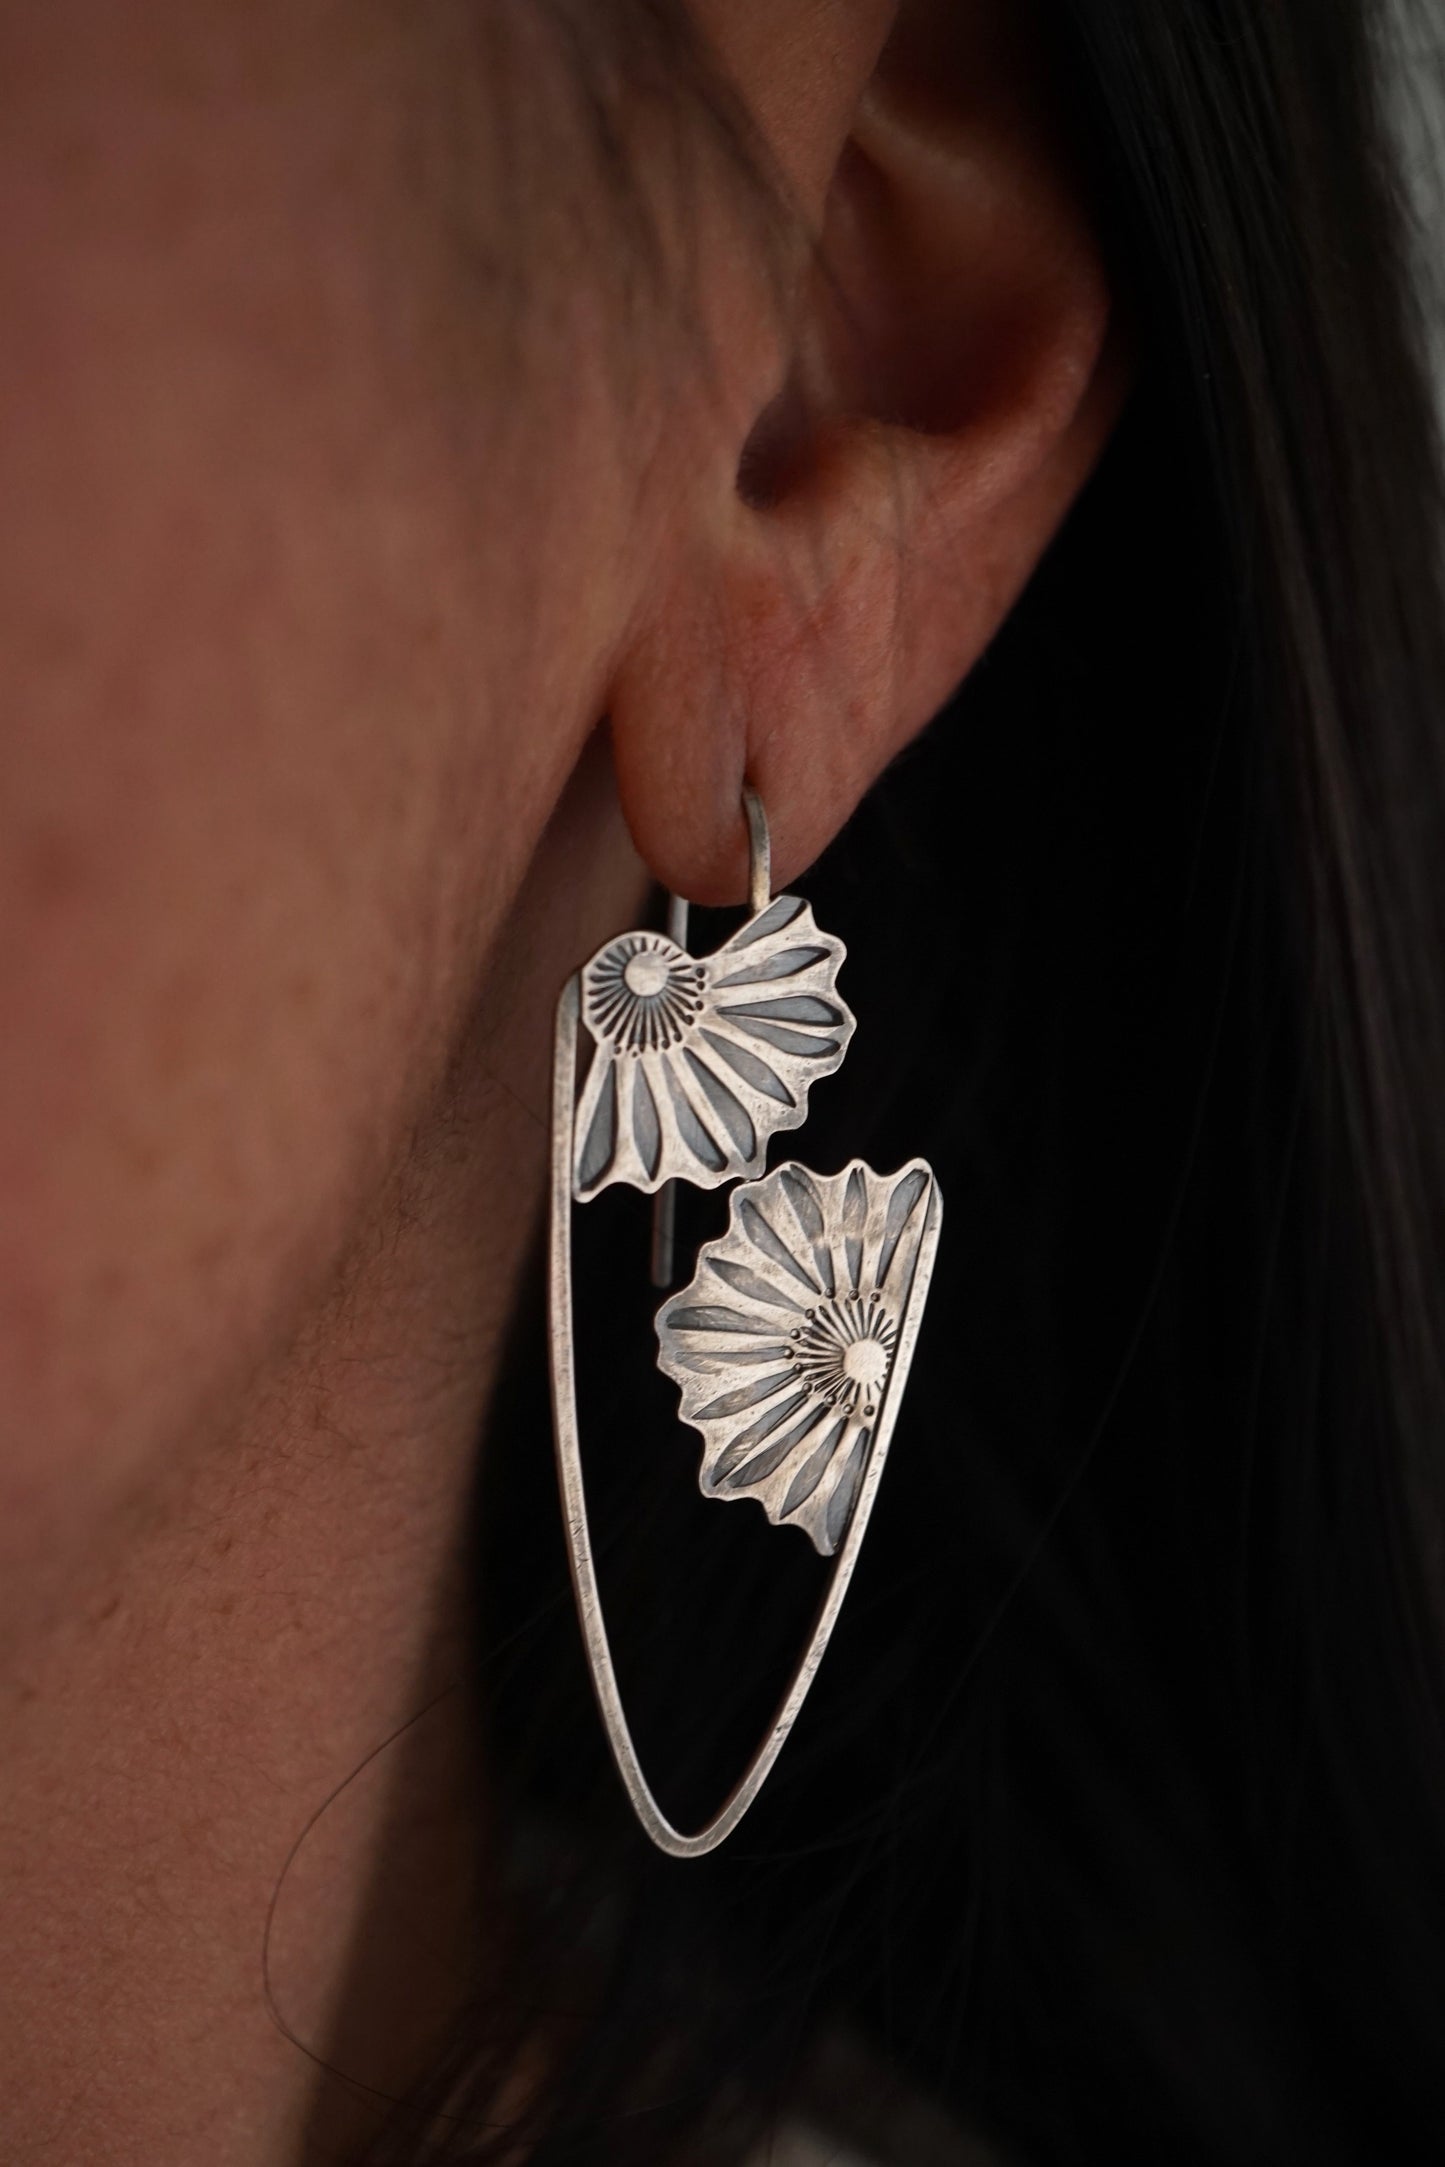 the forever unfurling earrings - all silver - Lumenrose